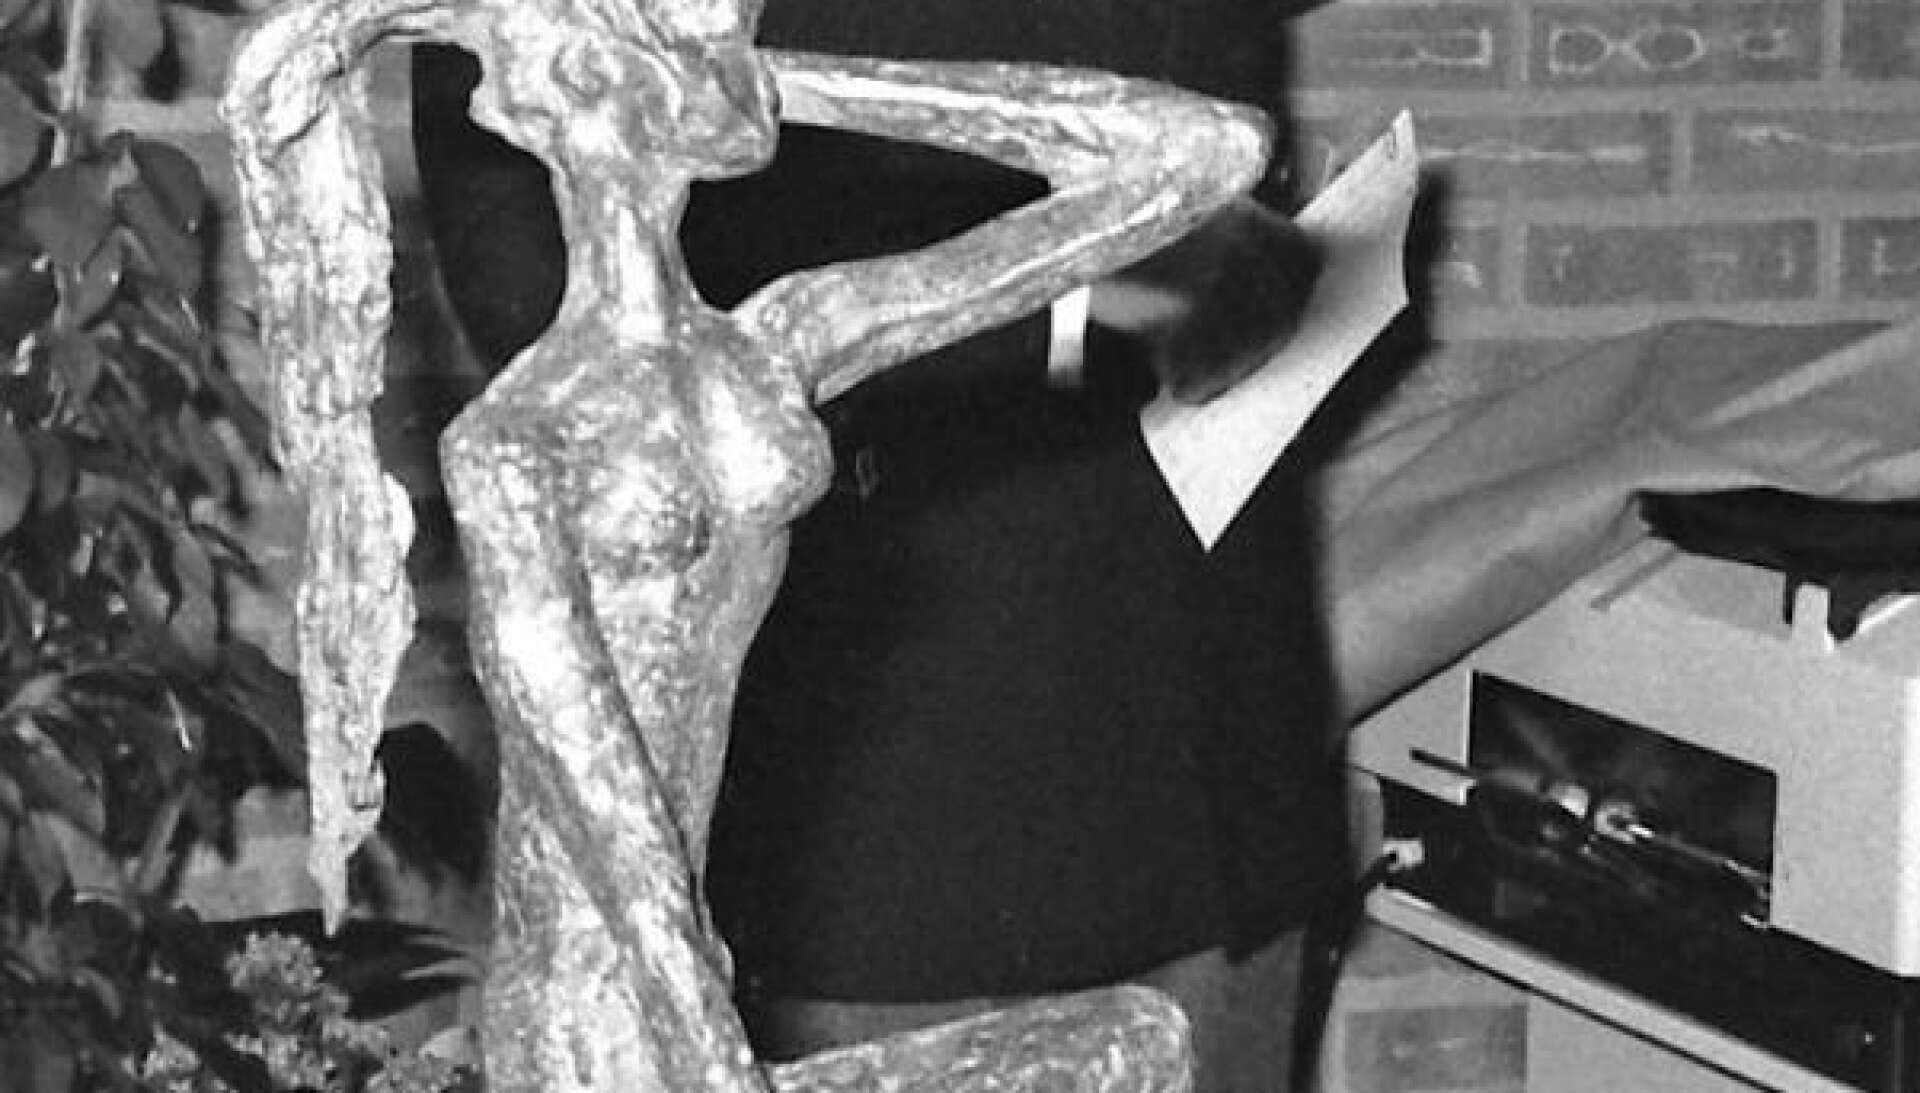 Skulpturen Tintomara inköptes från början för att pryda det nya hotellet. Överläkare Bernt Löfgren var ordförande i kulturnämndens konstinköpskommitté och det var han som presenterade Tintomara i samband med hotellinvigningen. När kommunen sålde hotellbyggnaden fick Tintomara sin plats vid Stortorget.